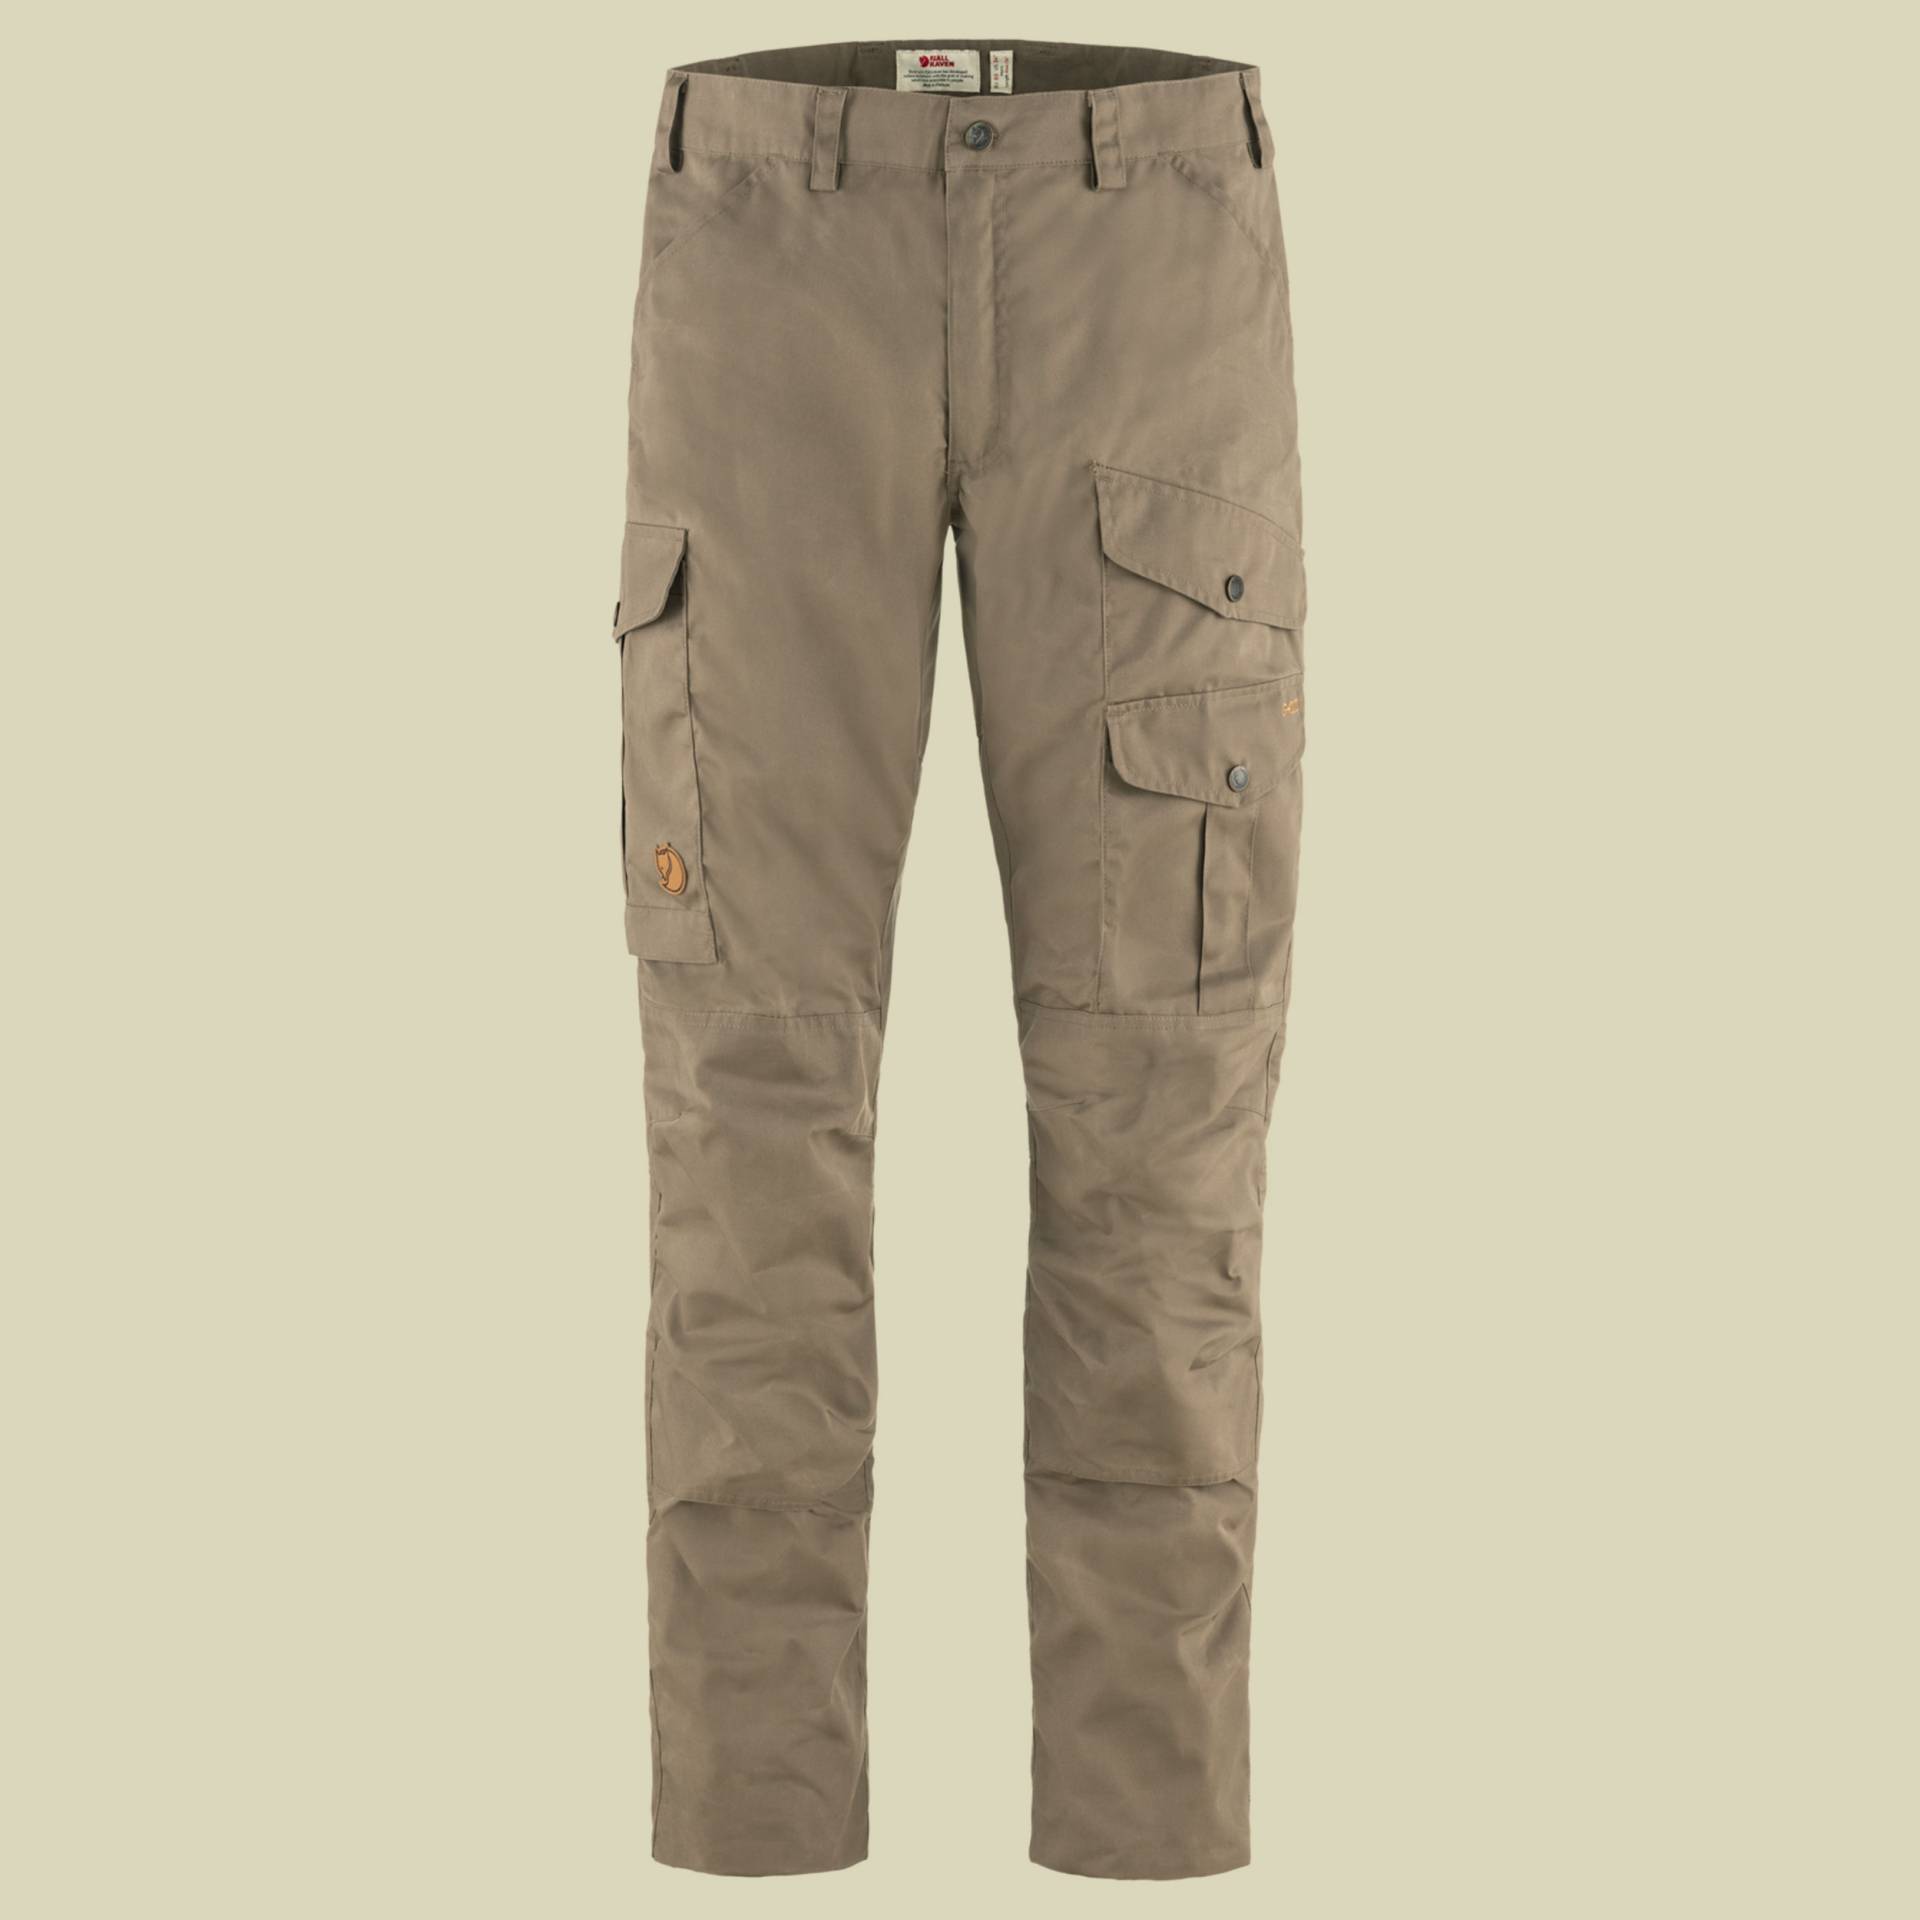 Barents Pro Trousers Men Größe 58 Farbe suede brown von Fjällräven